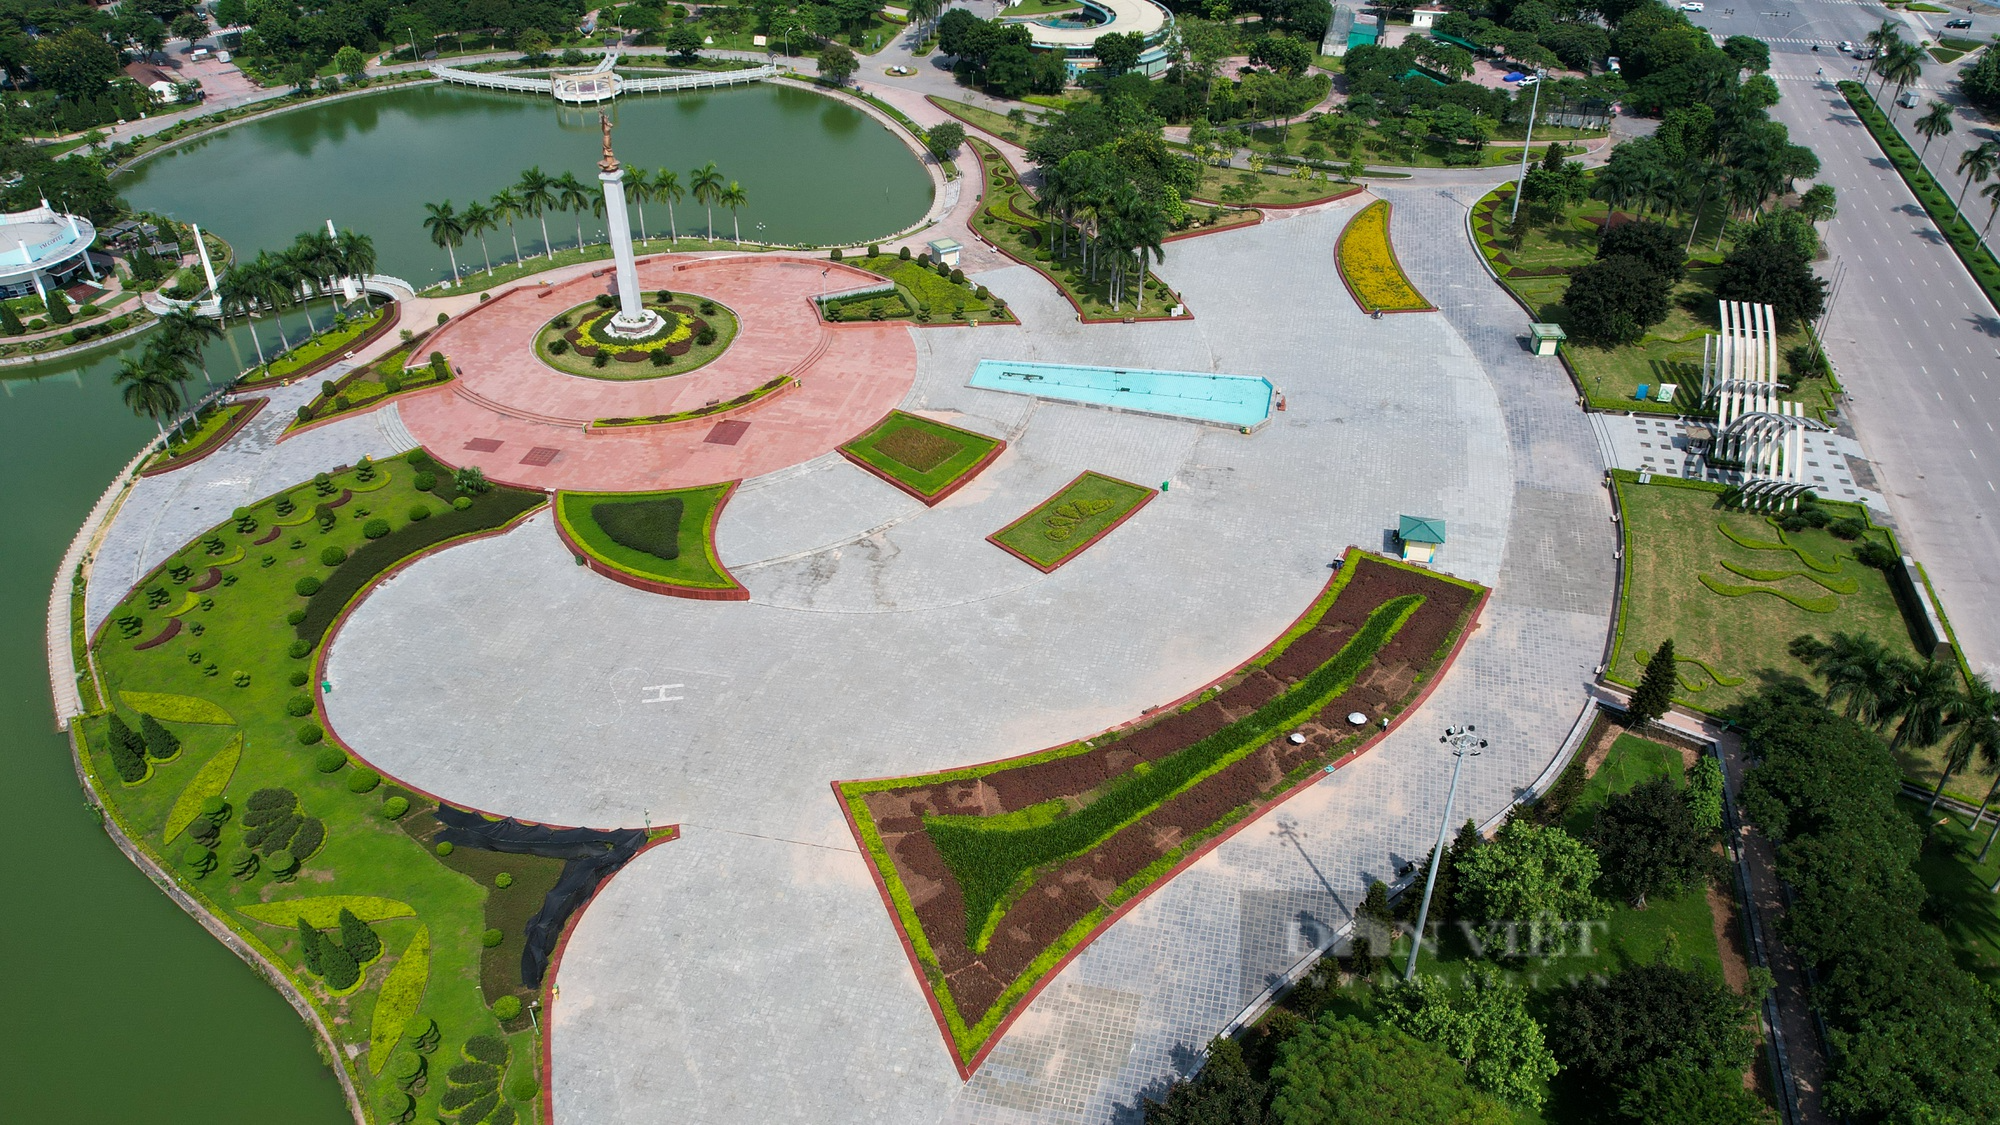 Hình ảnh công viên hiện đại nhất Hà Nội một thời, sau hơn 10 năm đưa vào sử dụng  - Ảnh 5.